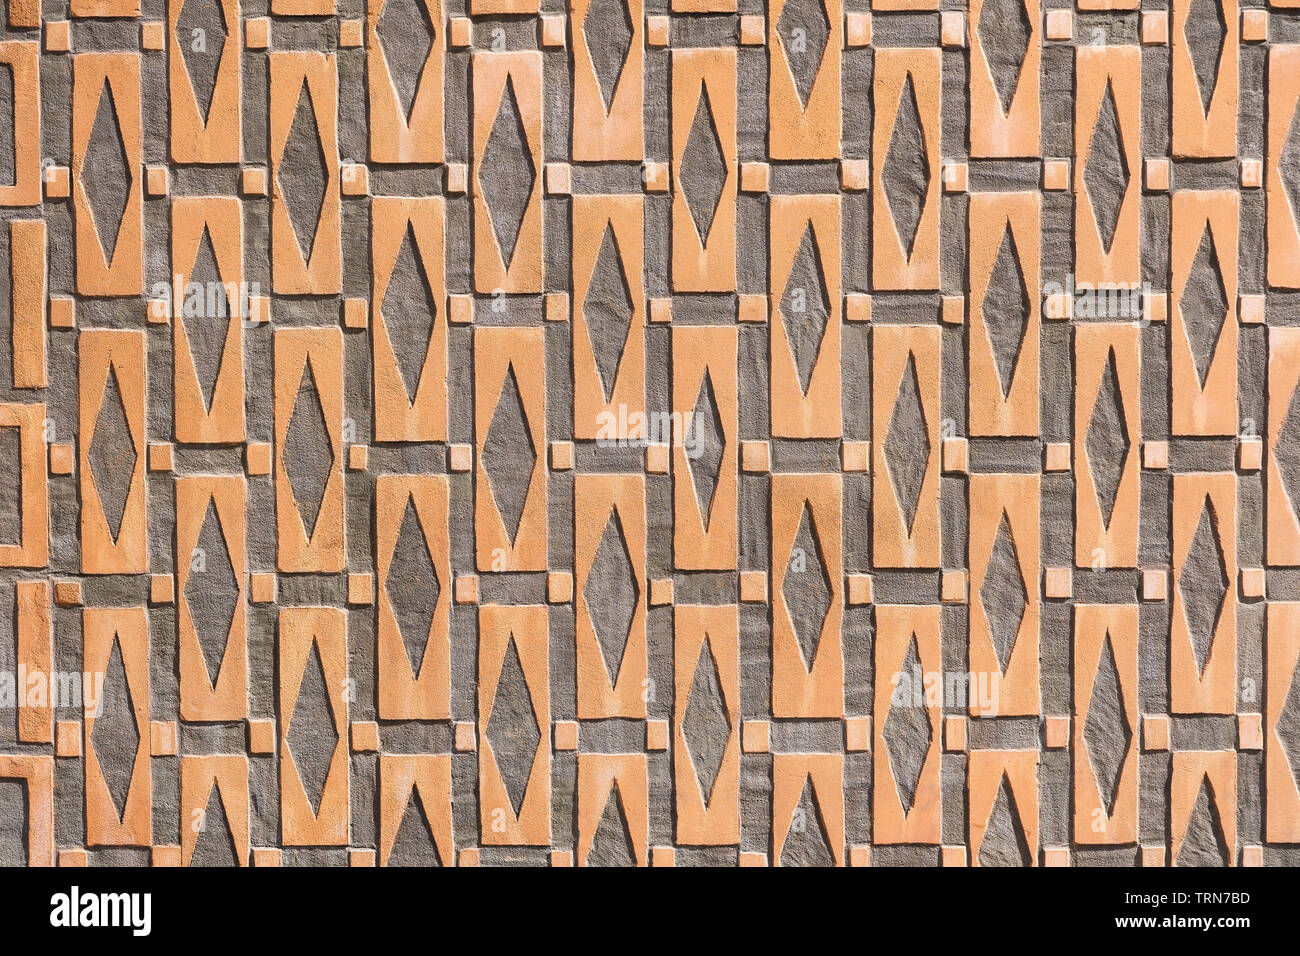 La texture de fond ou avec motif géométrique rectangulaire, carré et losange des formes de façade de maison historique dans la vieille ville de Varsovie en Pologne. Banque D'Images